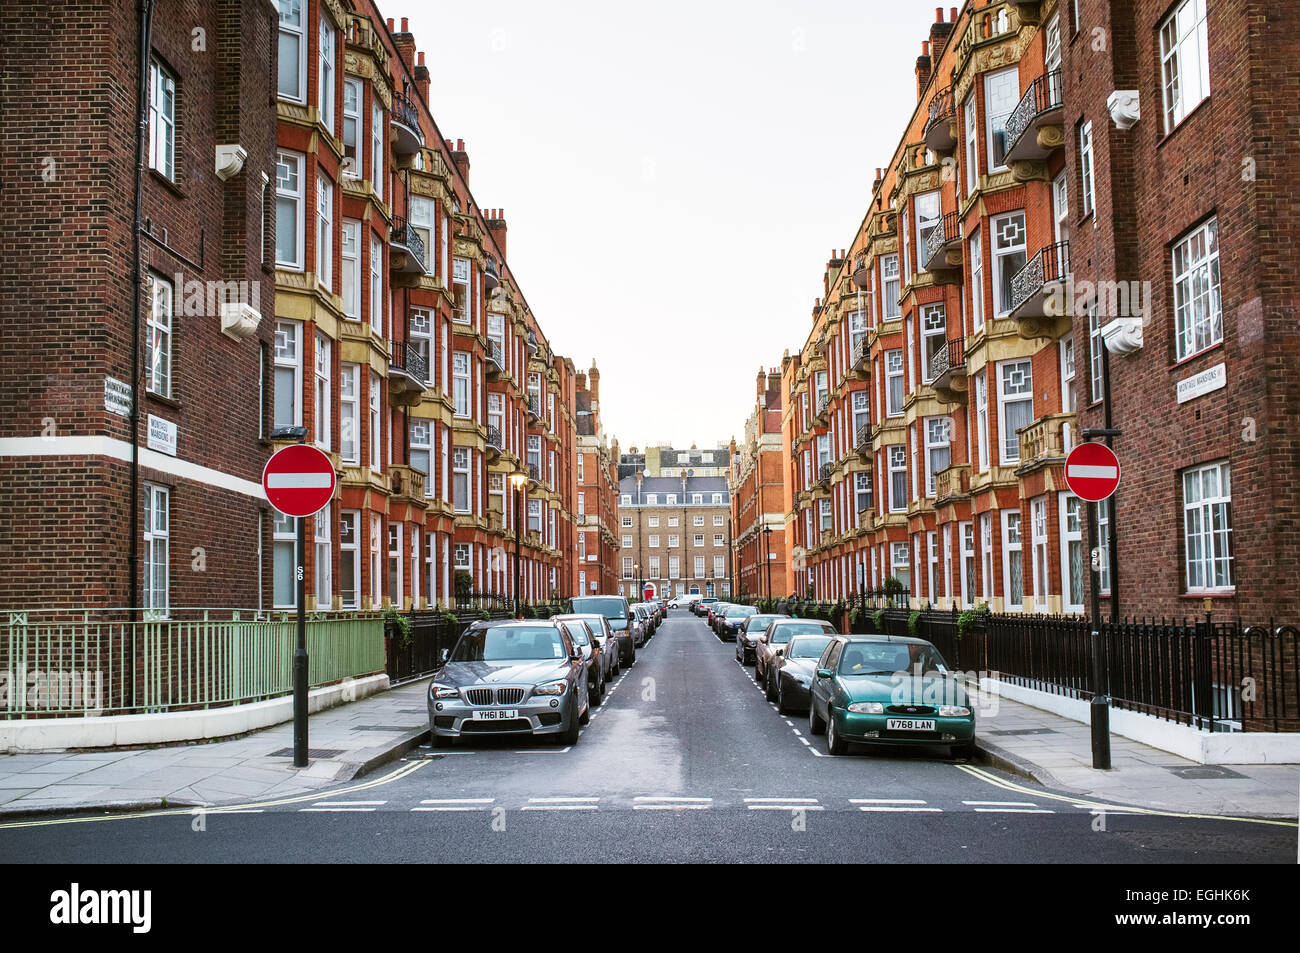 Londres, Royaume-Uni - 15 avril 2014 : Montagu Mansions est un hôtel particulier en brique rouge bloc qui a portage. Banque D'Images